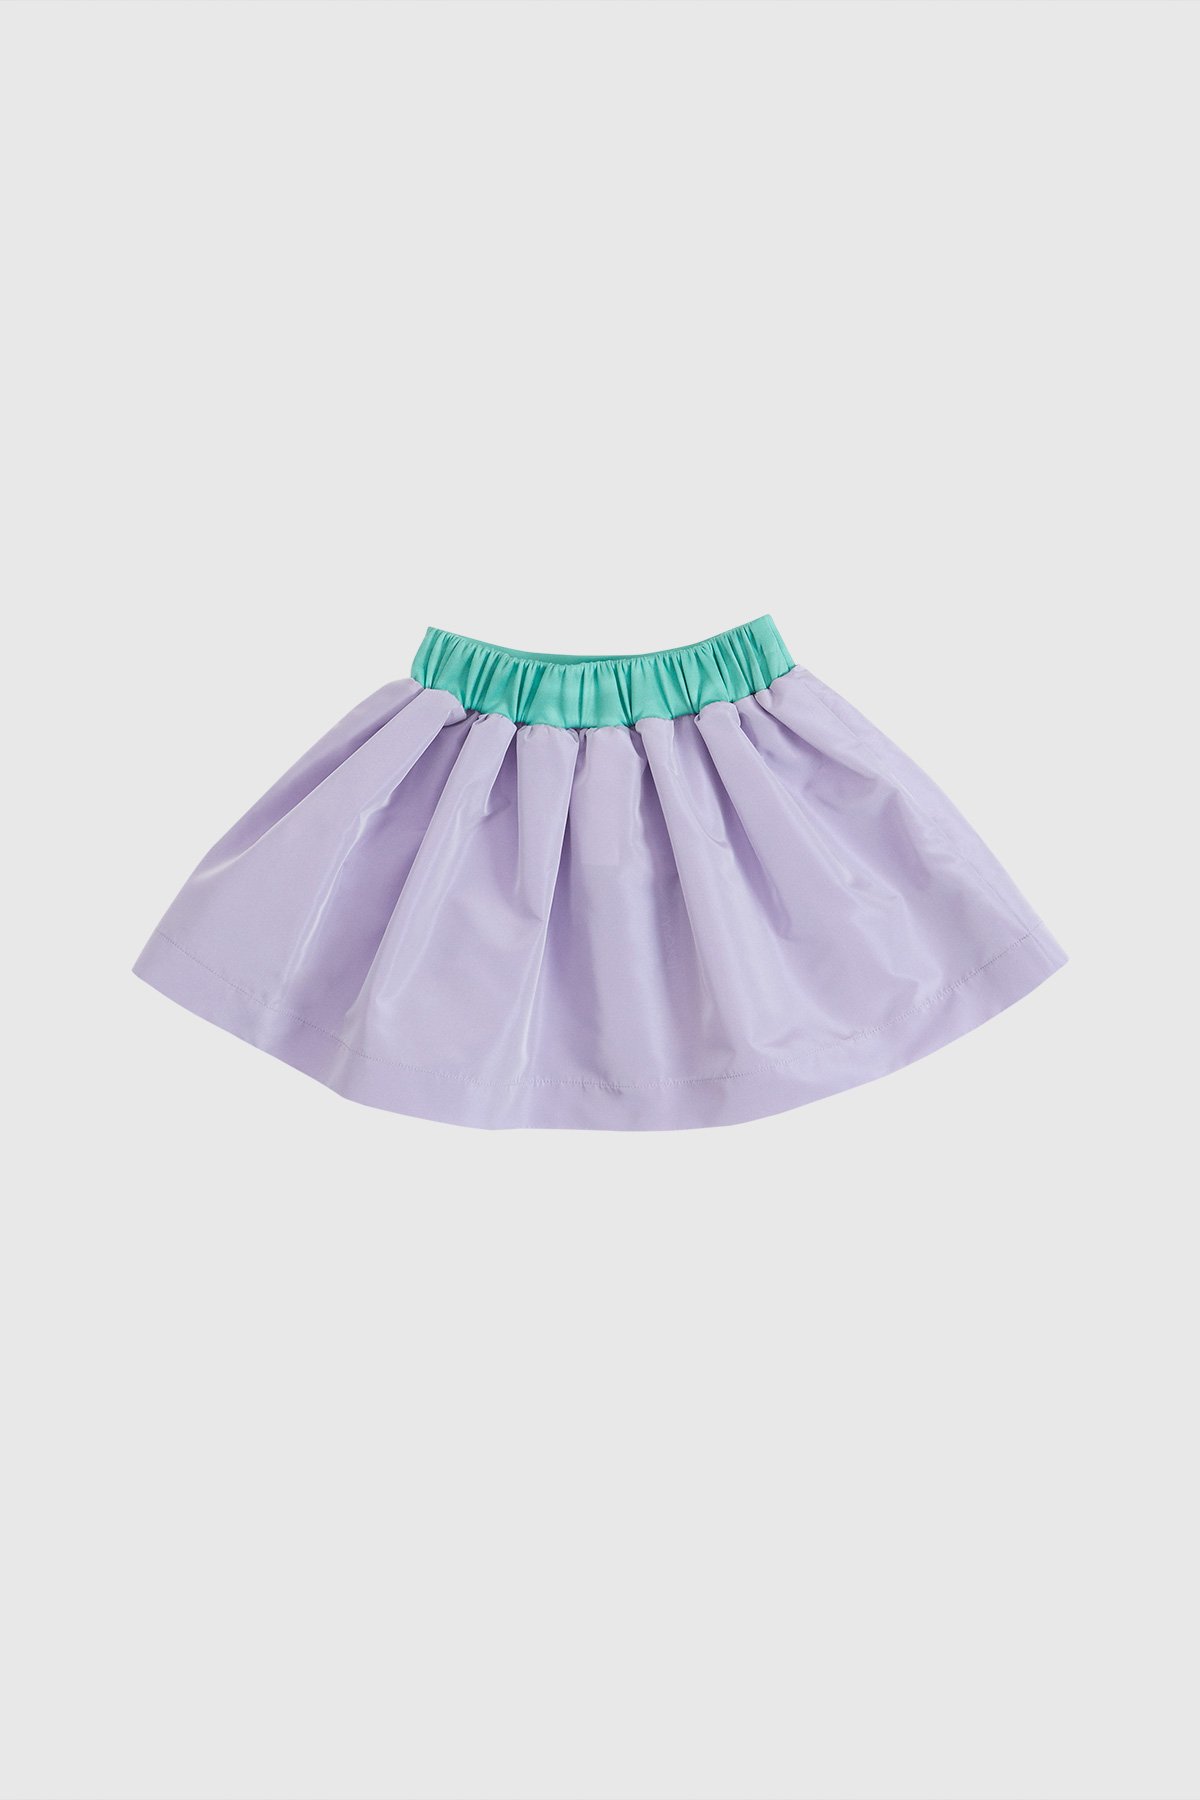 Applique Detailed Taffeta Skirt